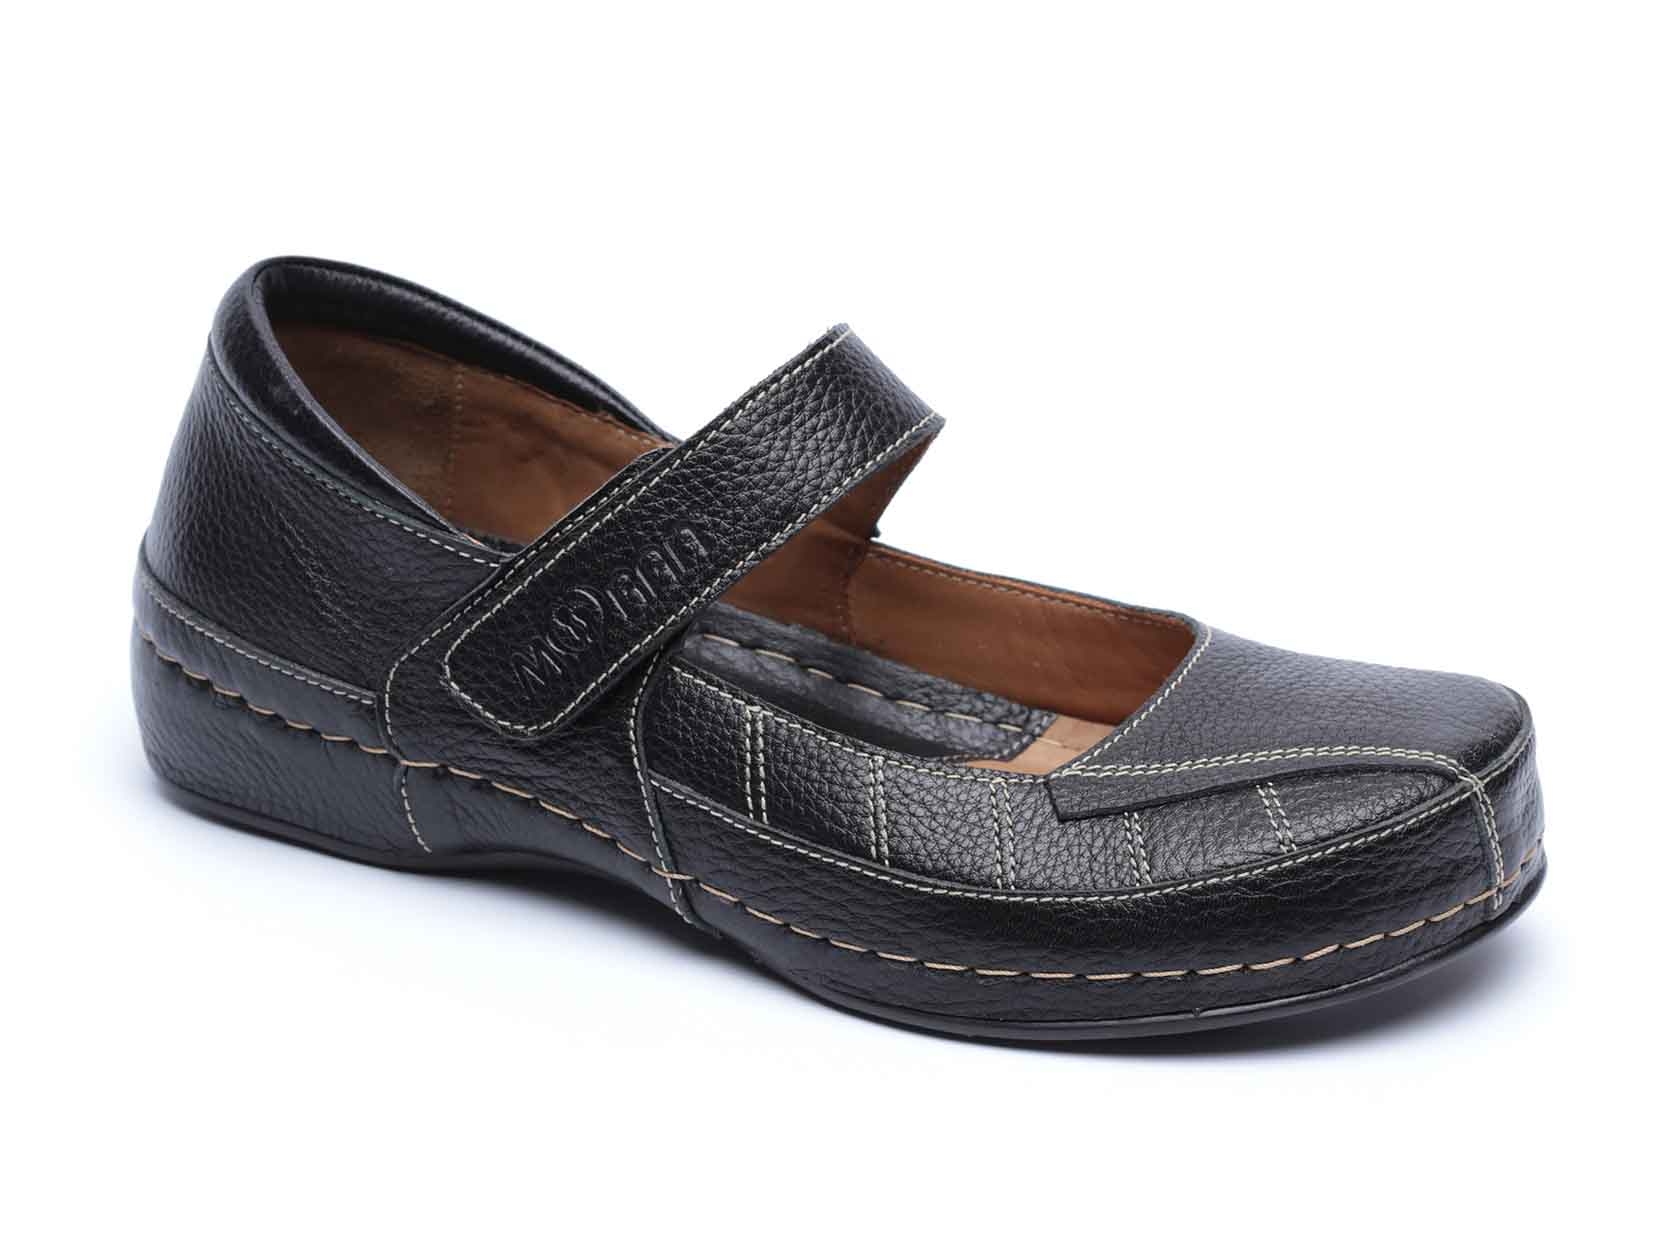 נעל נוחות מוריאל בצבע שחור - קולקציית נעליים לנשים